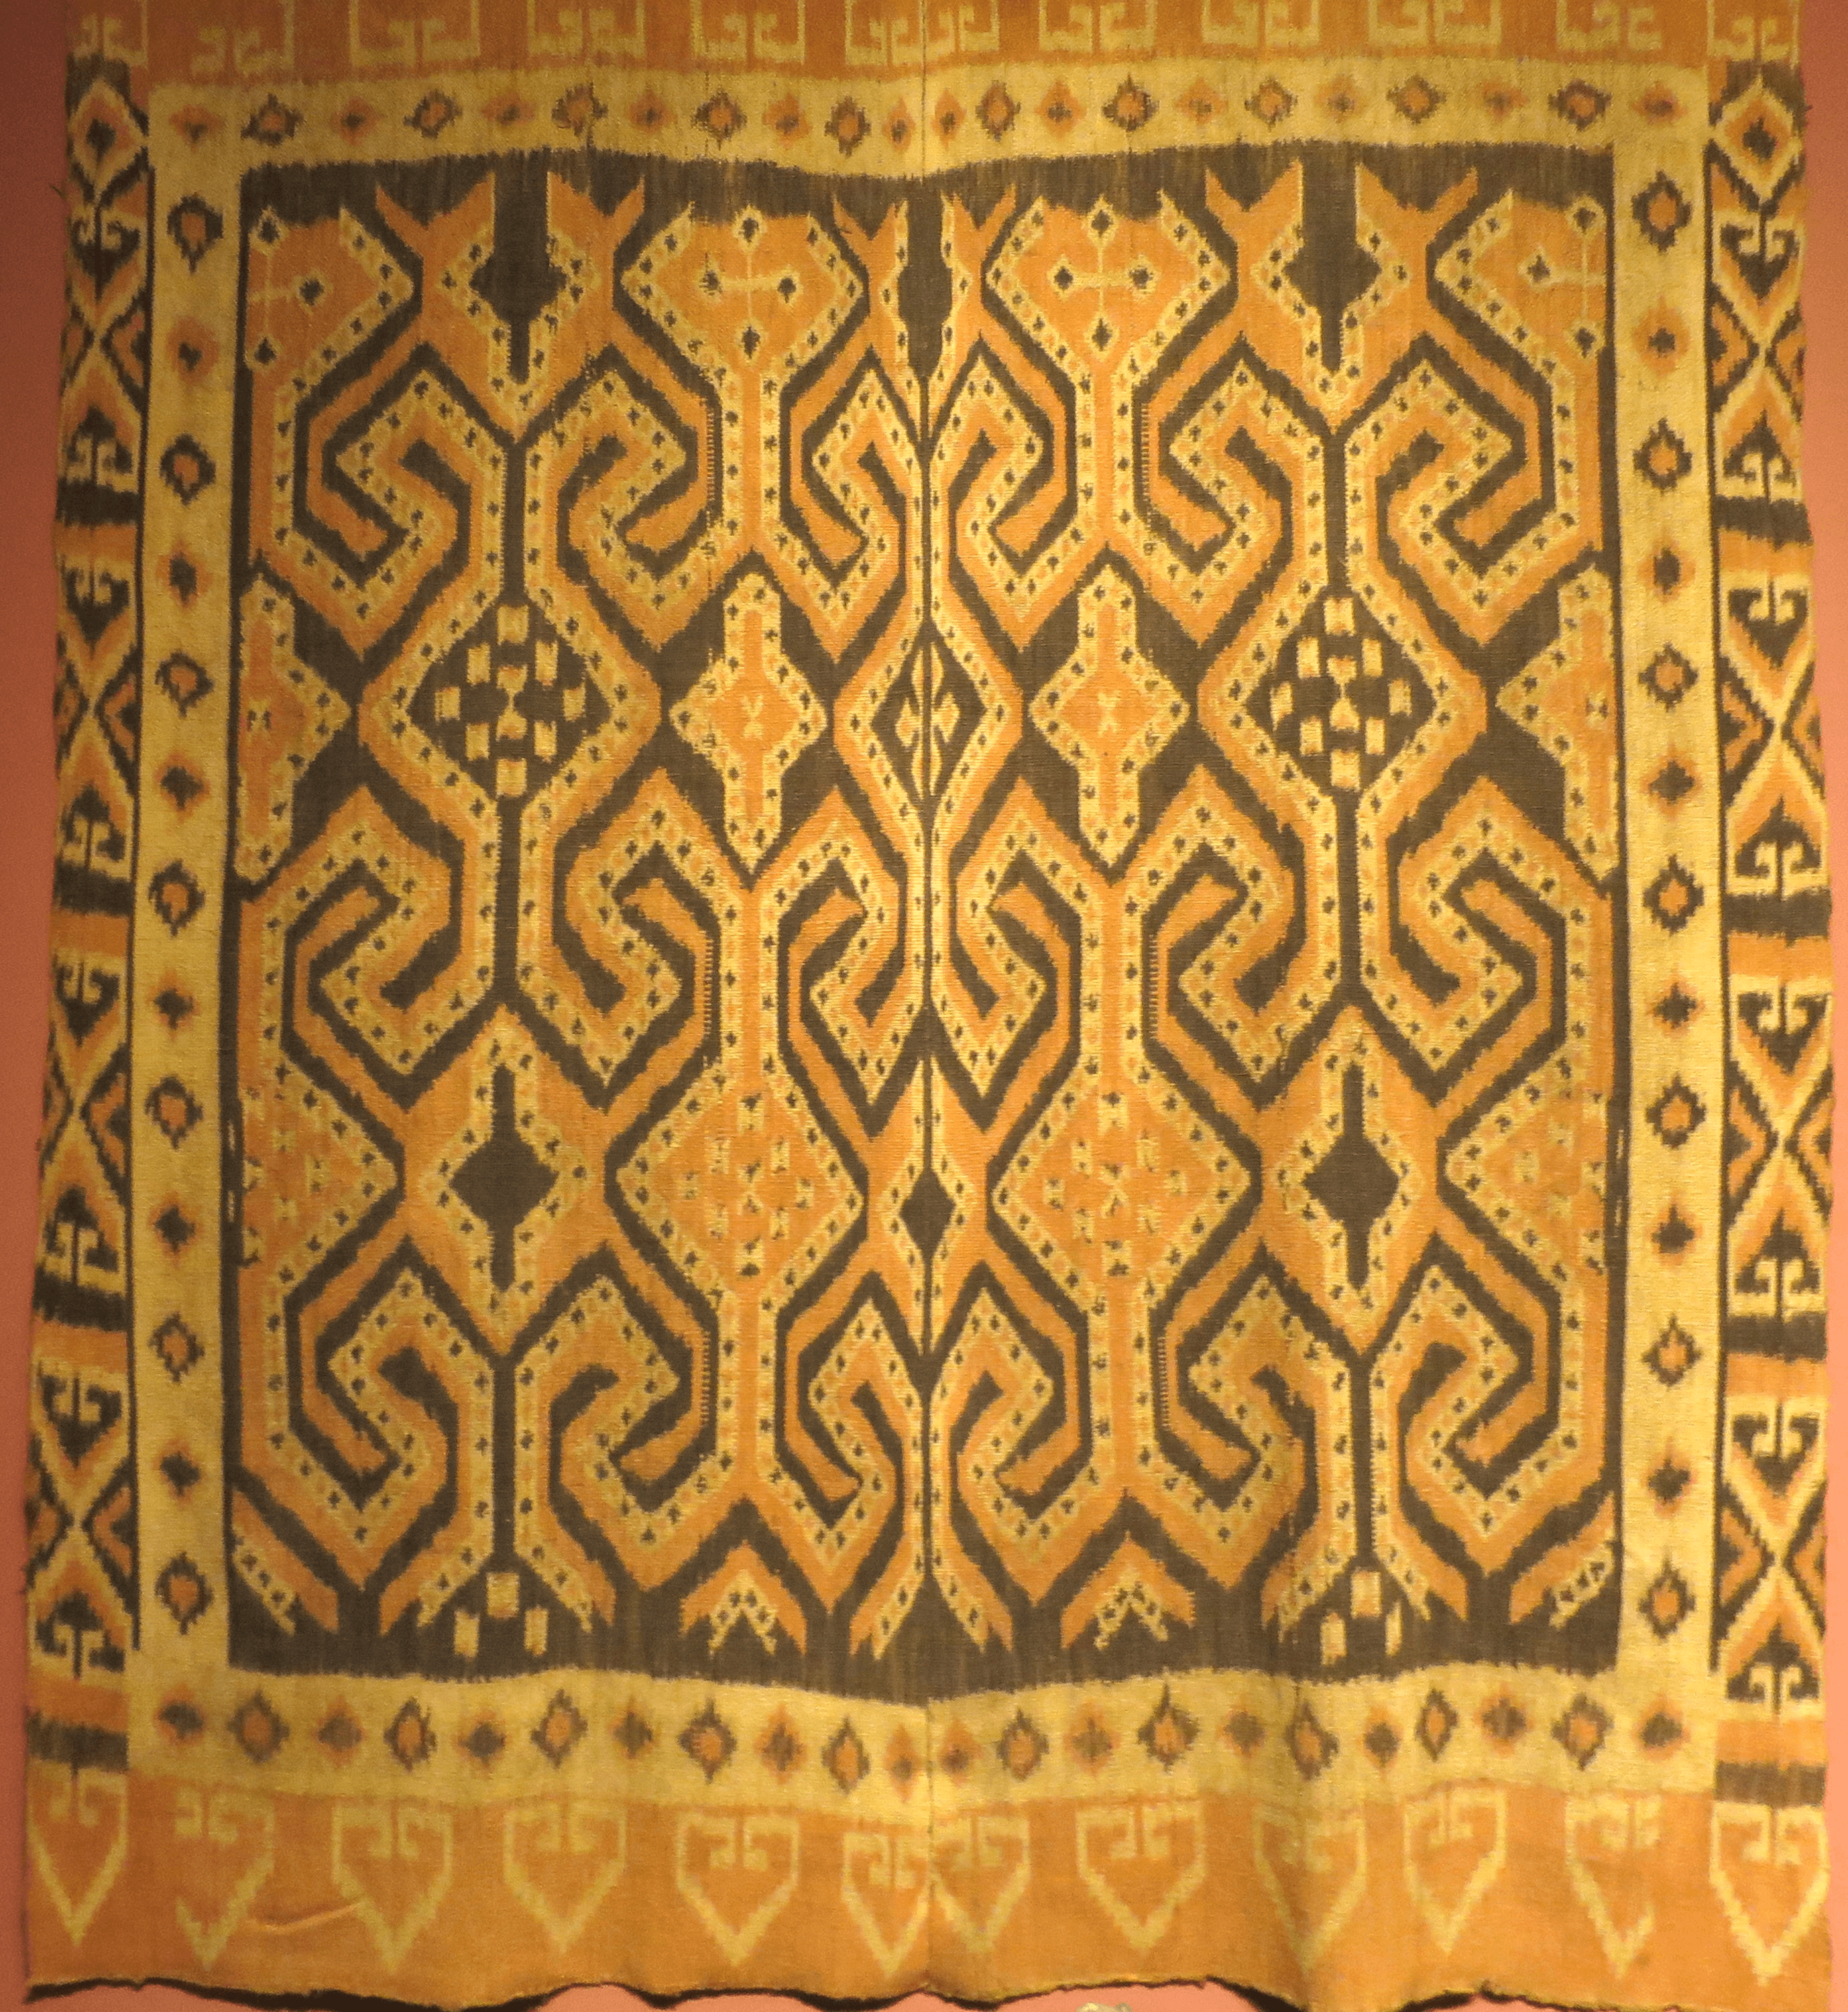 Ikat tissu traditionnel en soie naturelle de la région du lac Senkang au sud de la Sulawesi en Indonésie